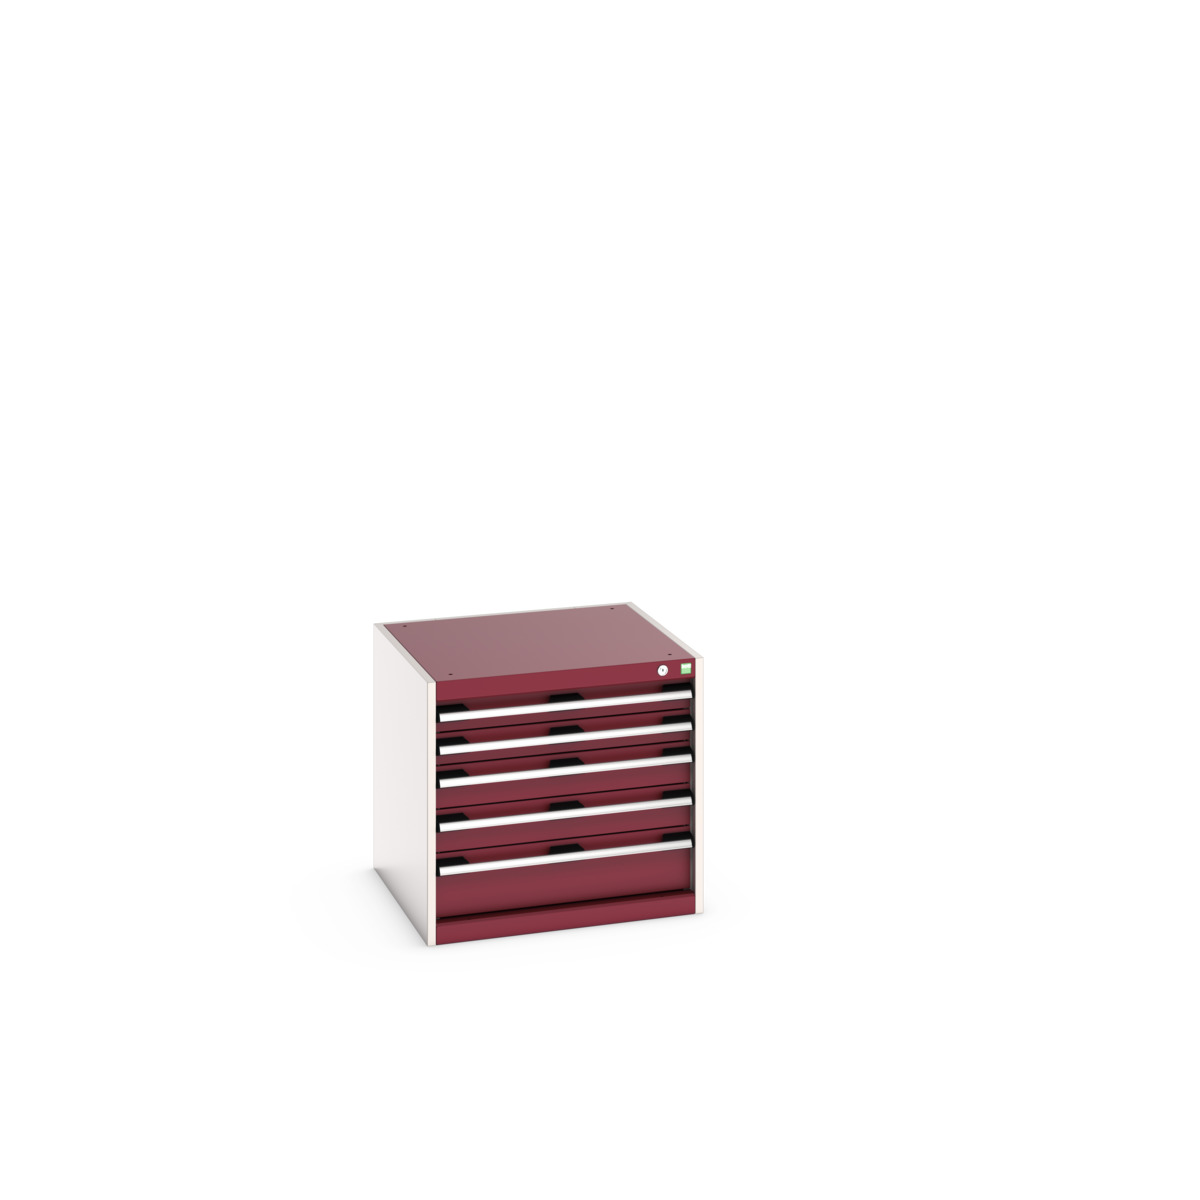 40019152.24V - cubio drawer cabinet